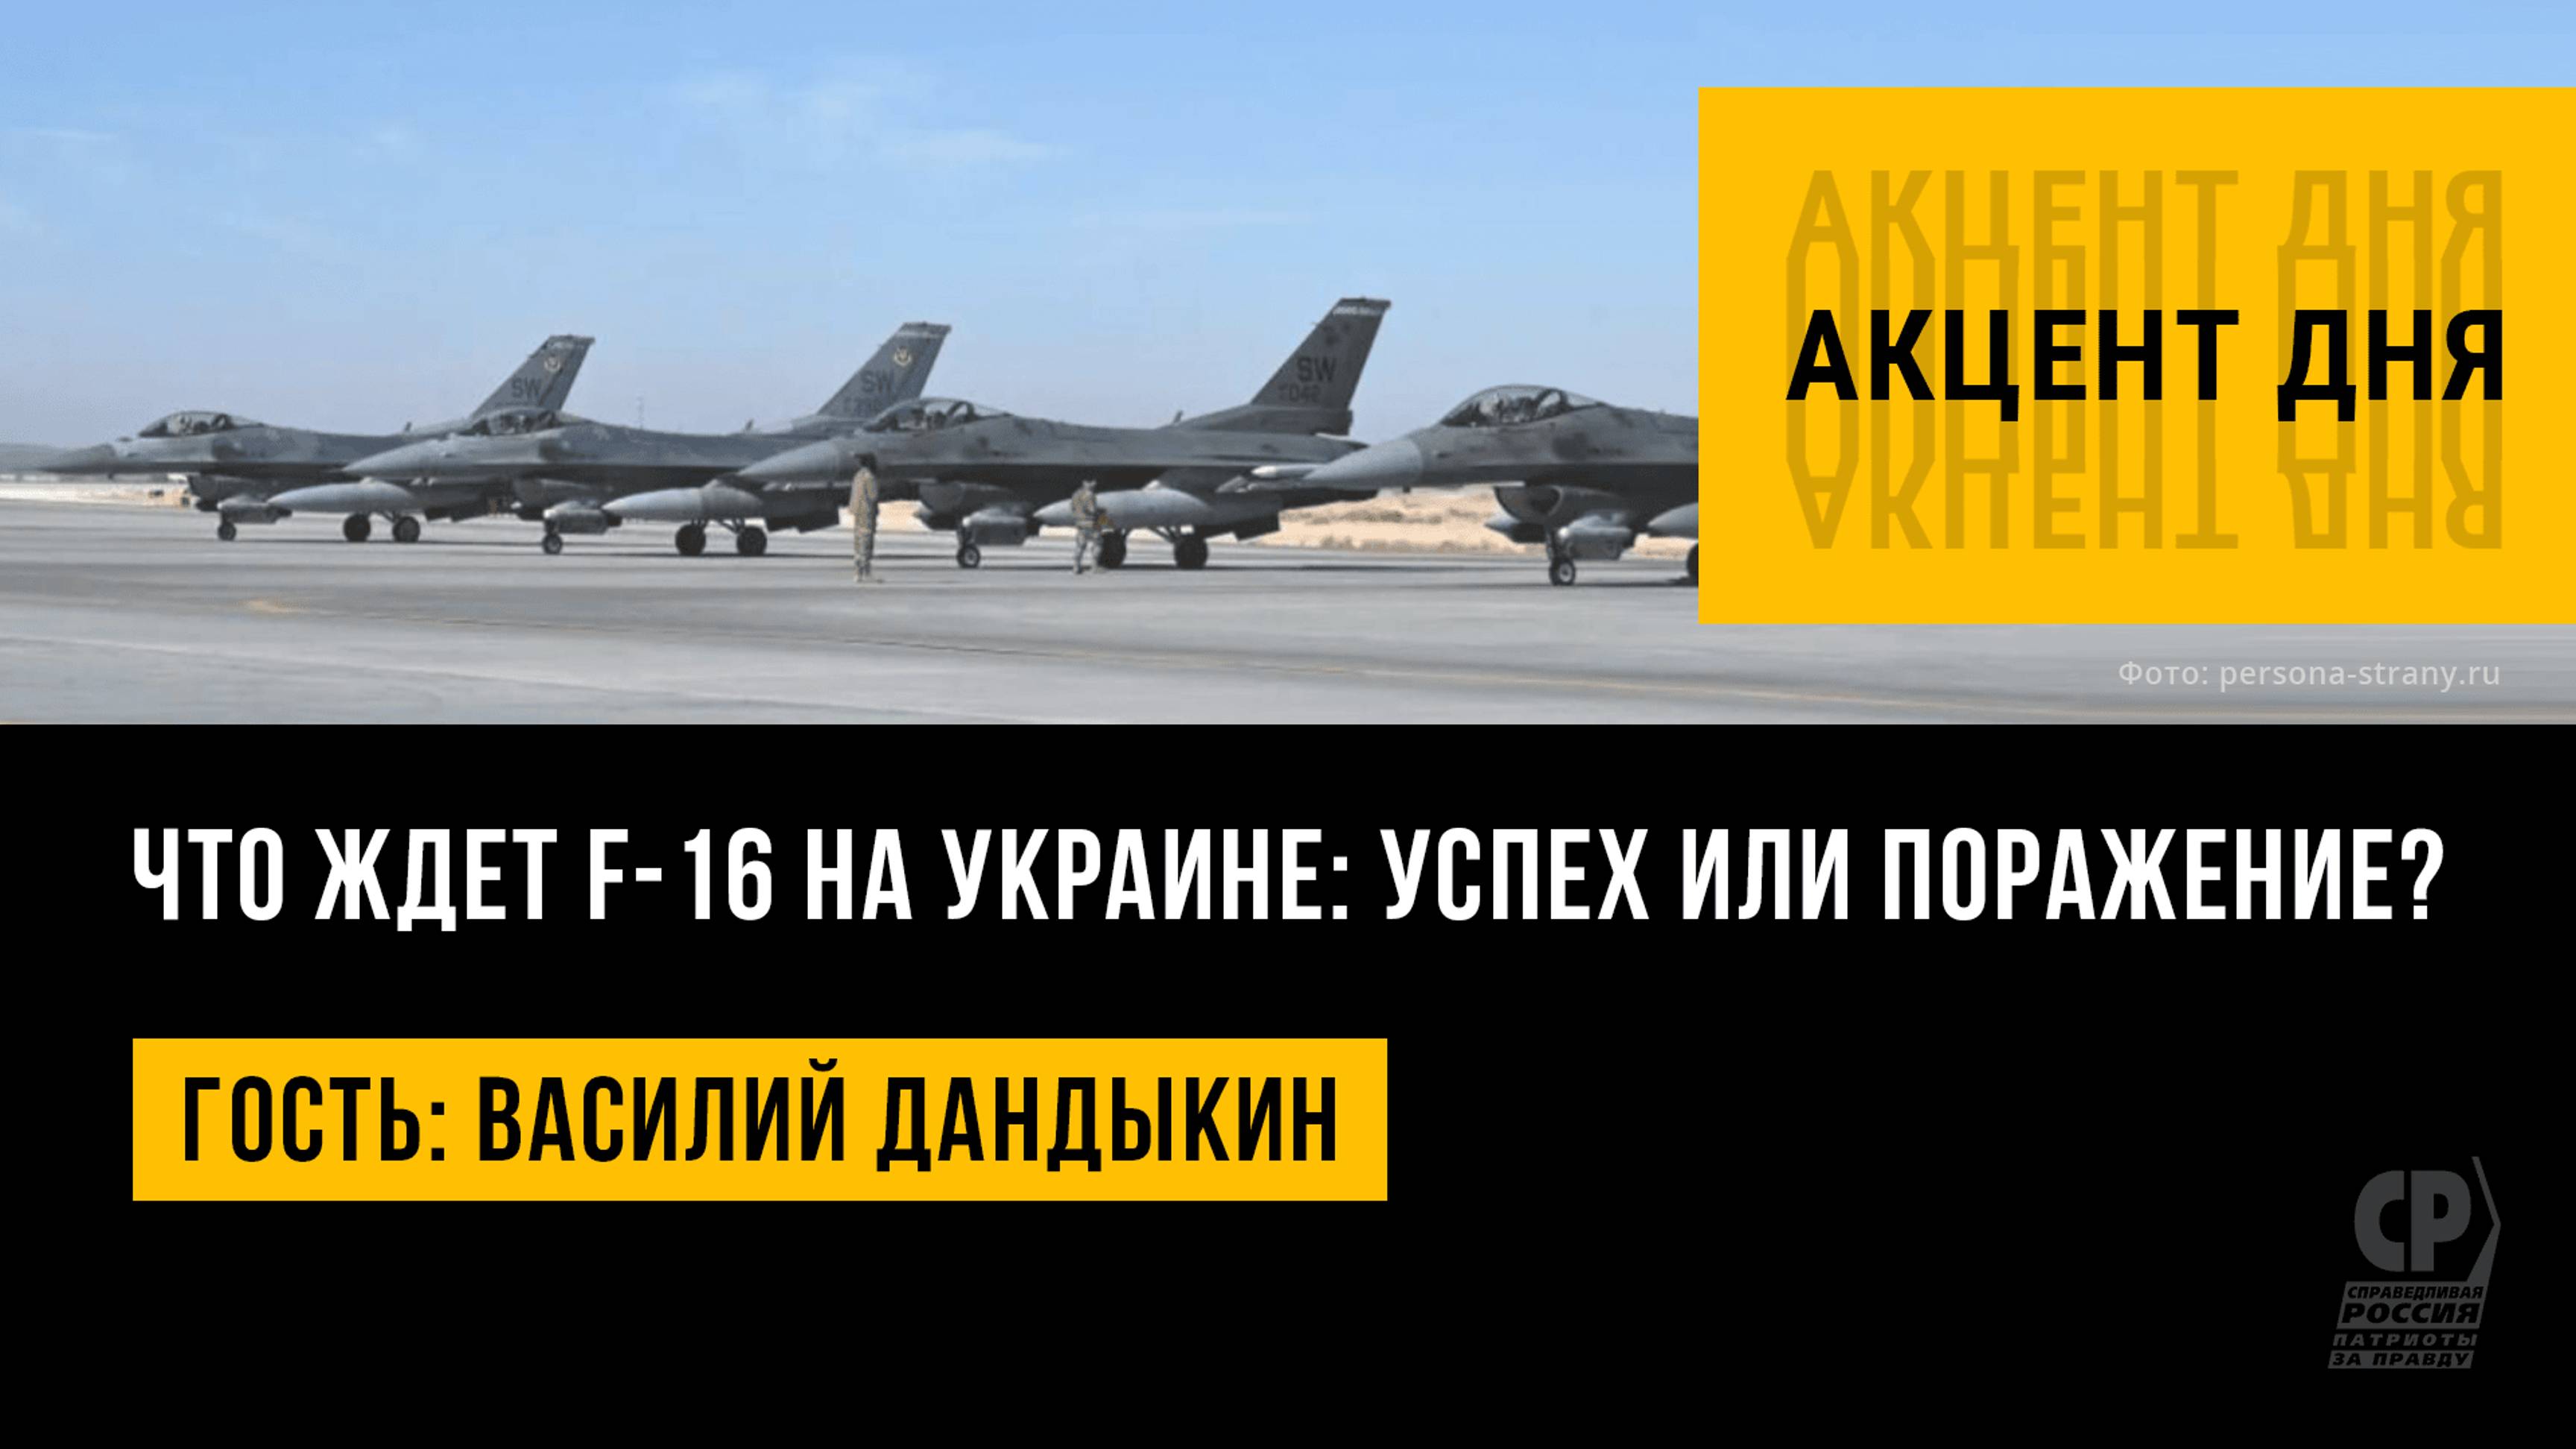 Что ждет F-16 на Украине: успех или поражение? Василий Дандыкин